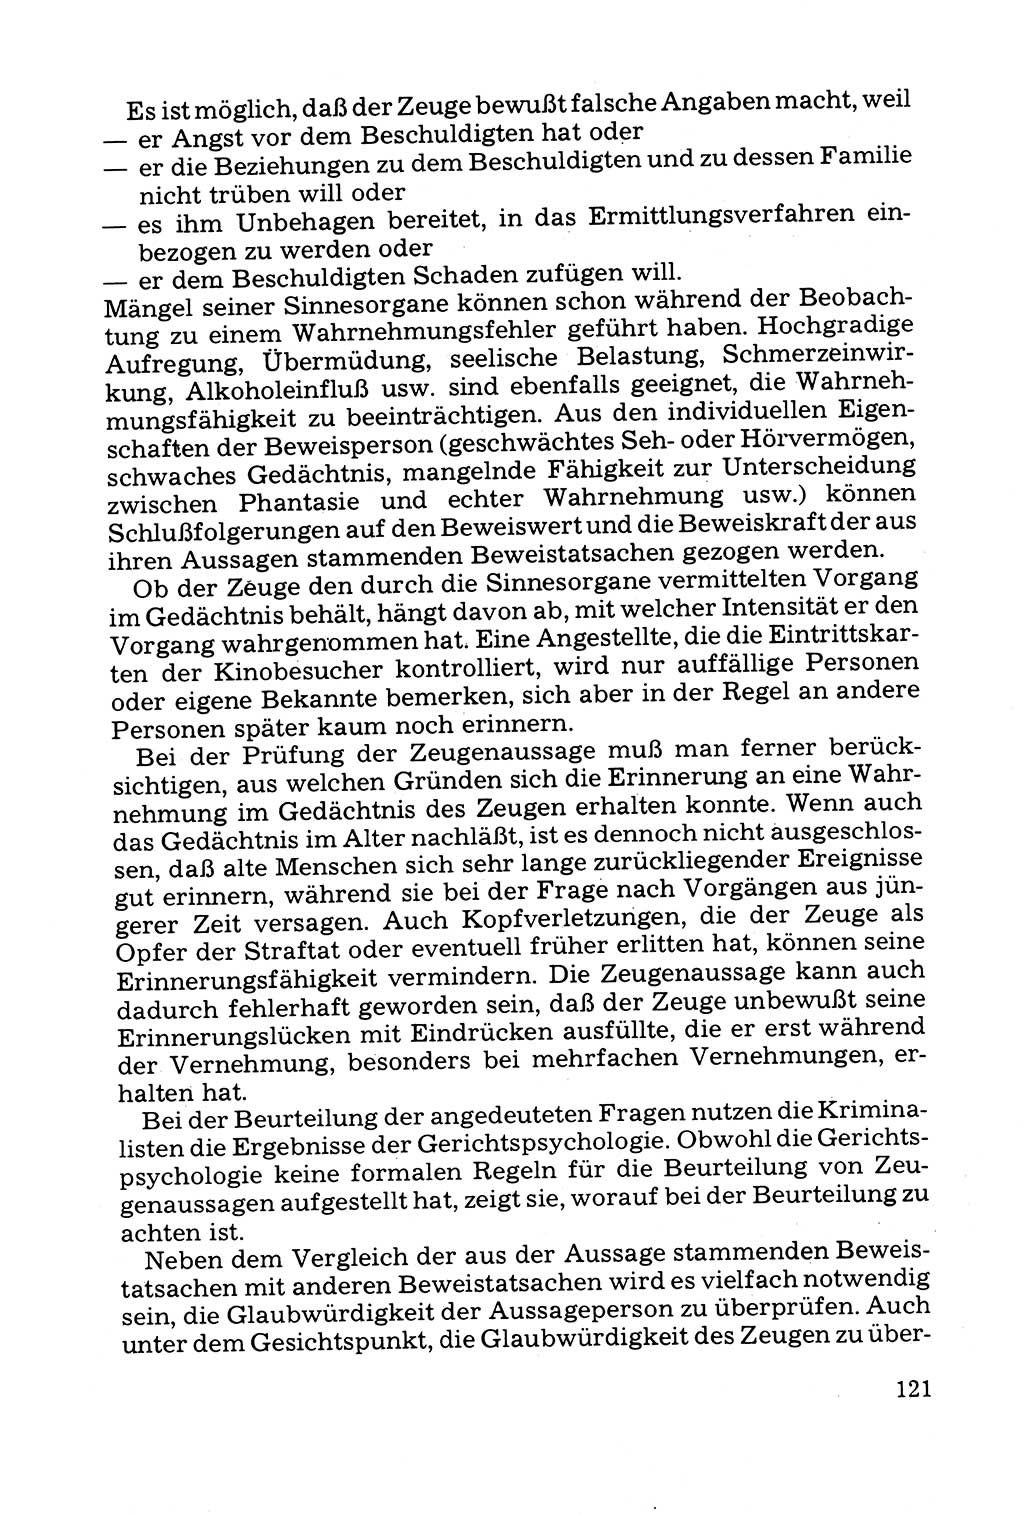 Grundfragen der Beweisführung im Ermittlungsverfahren [Deutsche Demokratische Republik (DDR)] 1980, Seite 121 (Bws.-Fhrg. EV DDR 1980, S. 121)